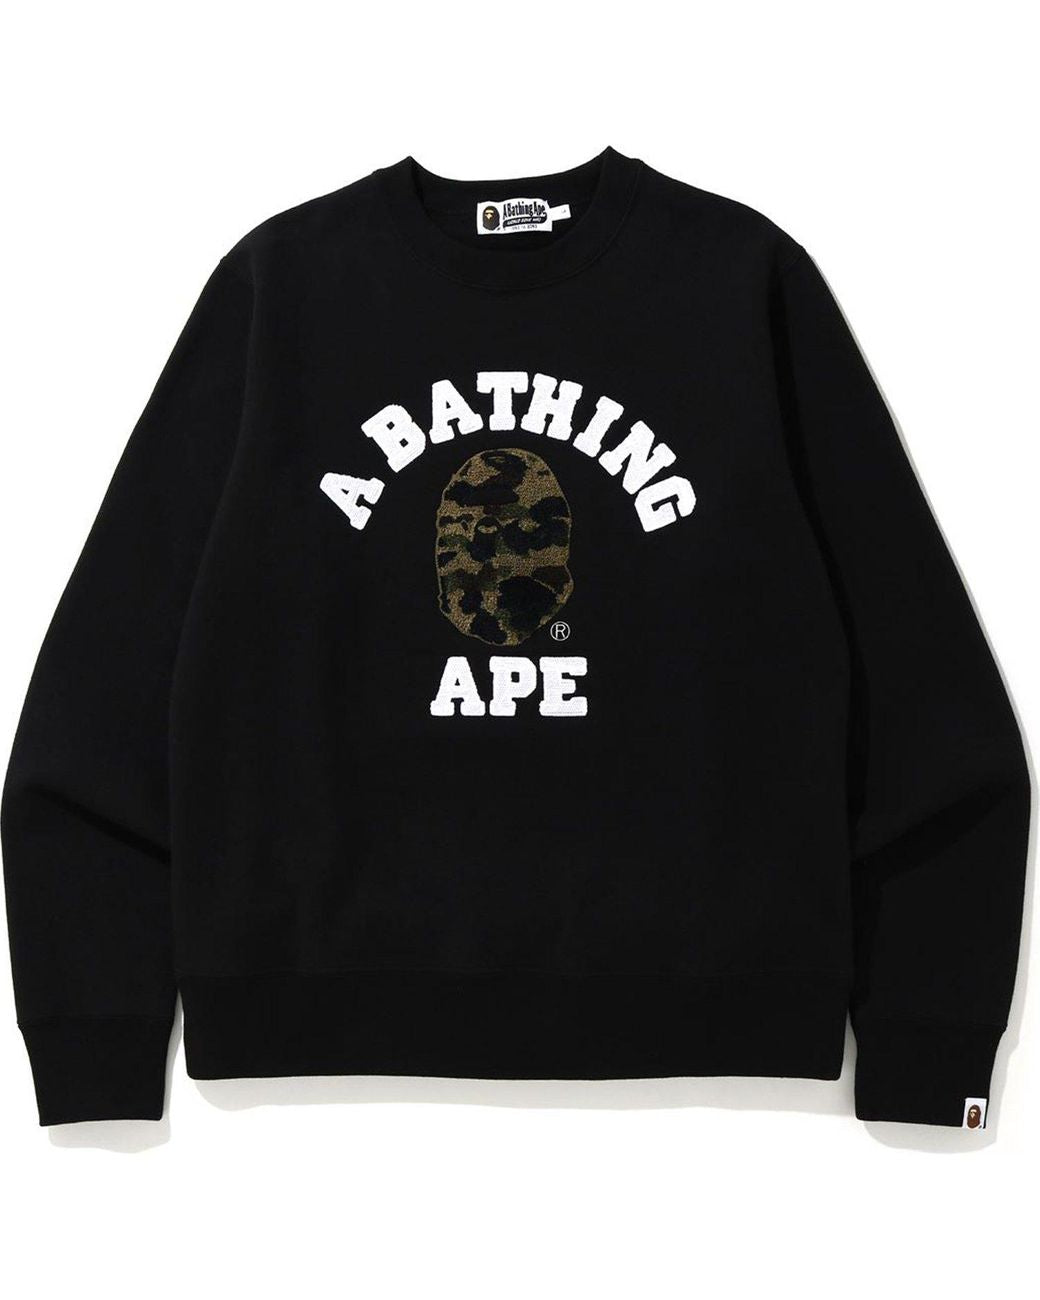 Bape (A Bathing Ape) Sweater